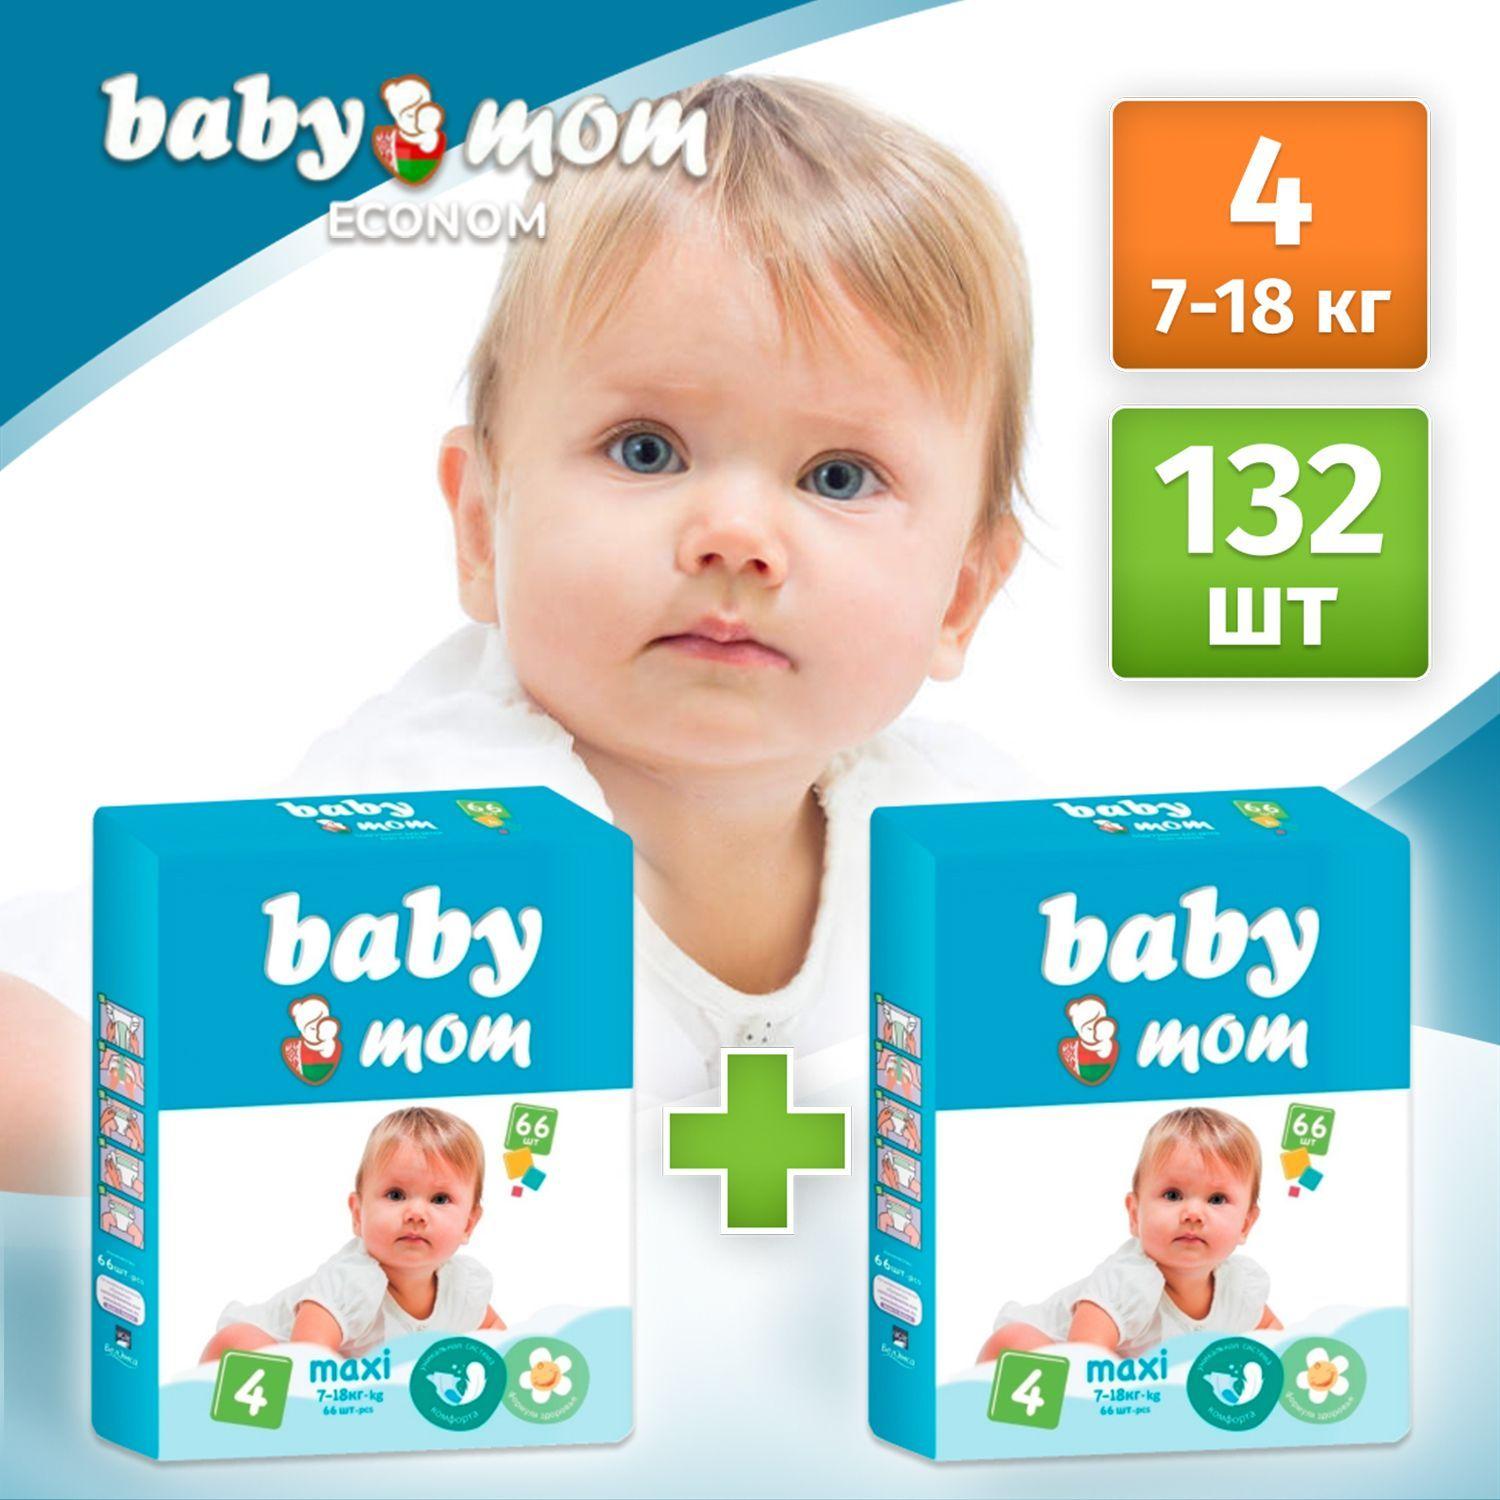 Подгузники детские Baby Mom Ecomon maxi для малышей 7-18 кг, 4 размер, 132 шт (2 упаковки по 66 шт), дневные (ночные) с кремом бальзамом алоэ вера и индикатором влаги